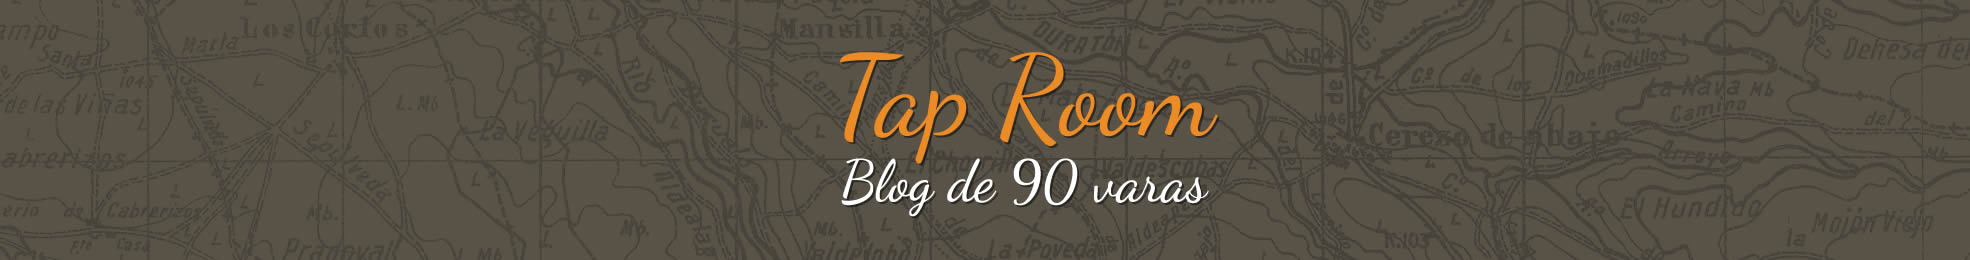 Tap Room, blog de 90 varas